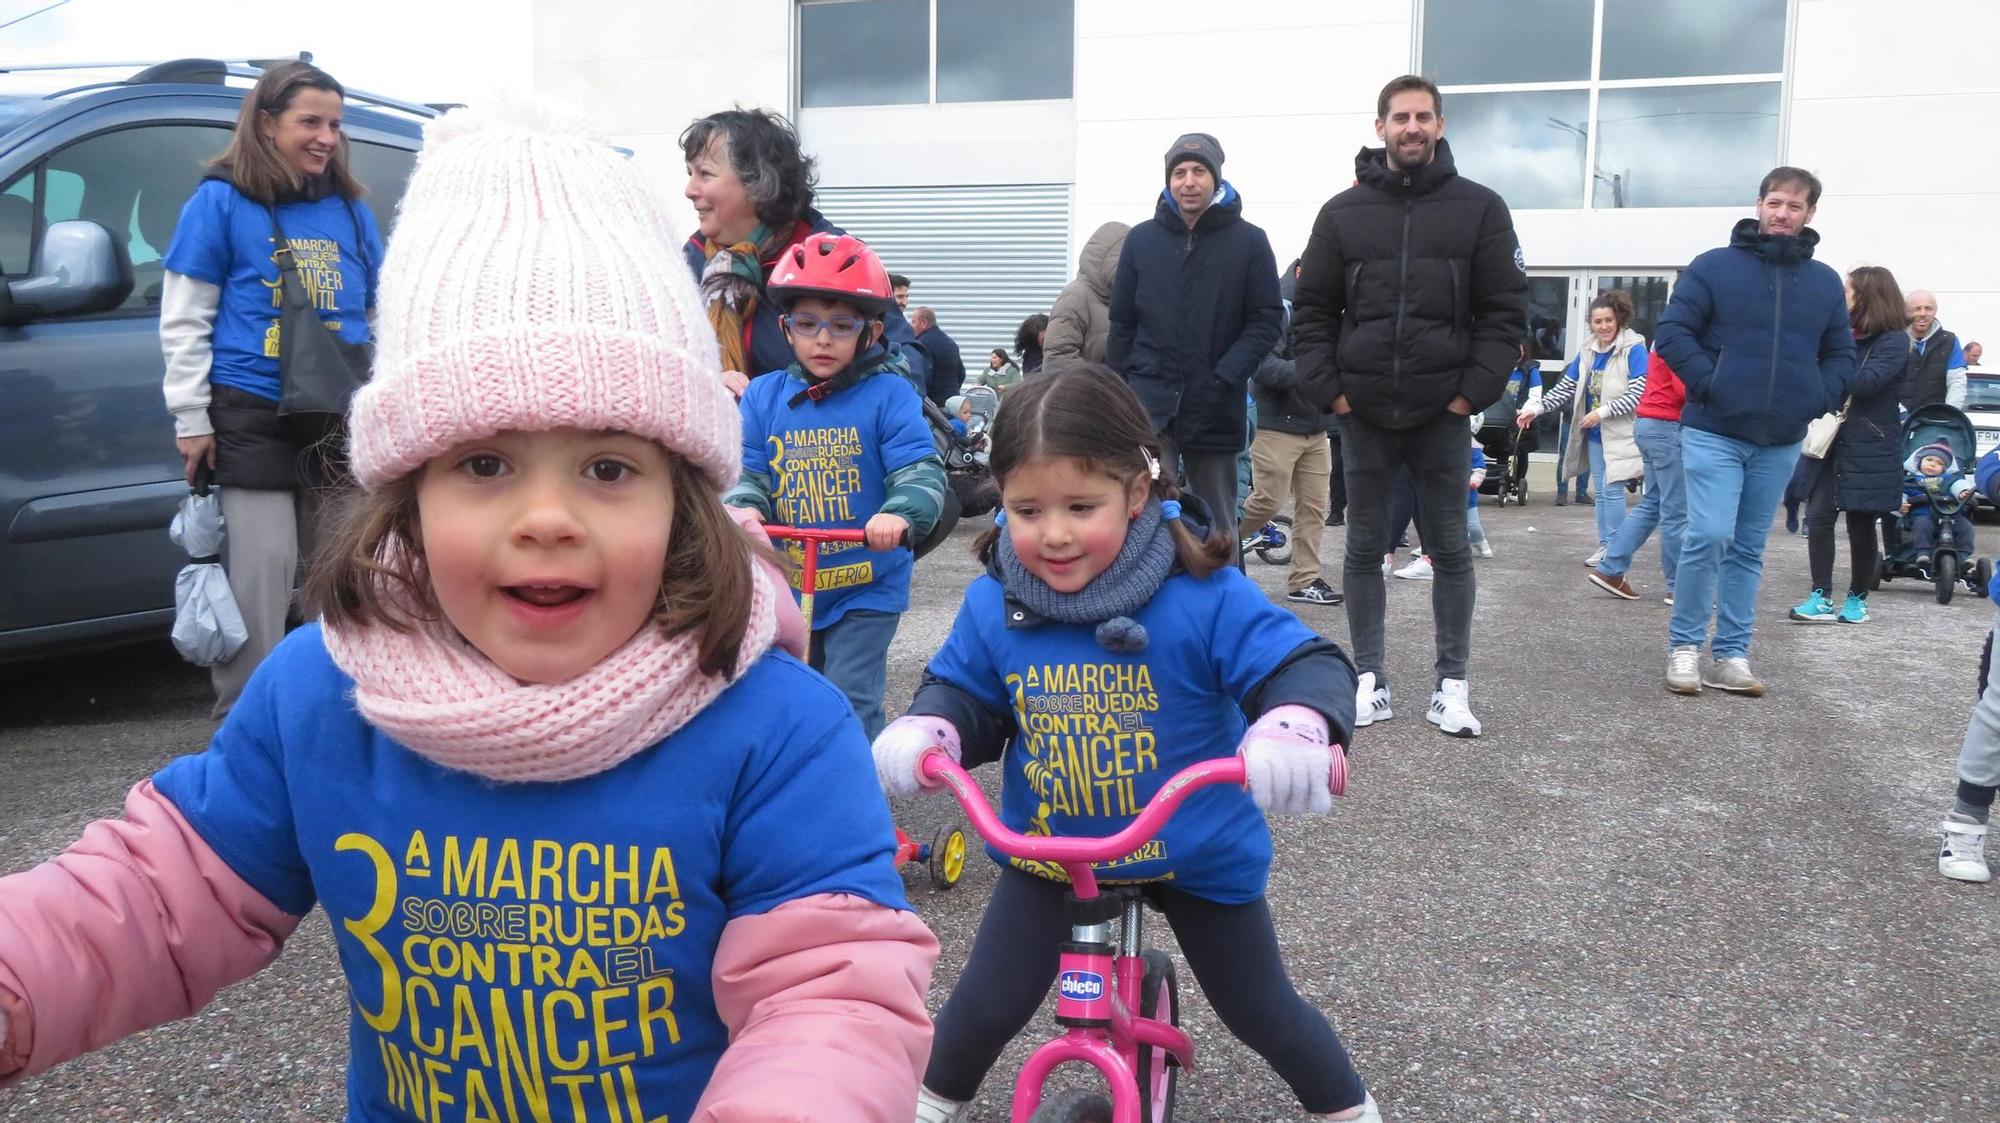 III Marcha sobre rudas contra el cáncer infantil de Monesterio